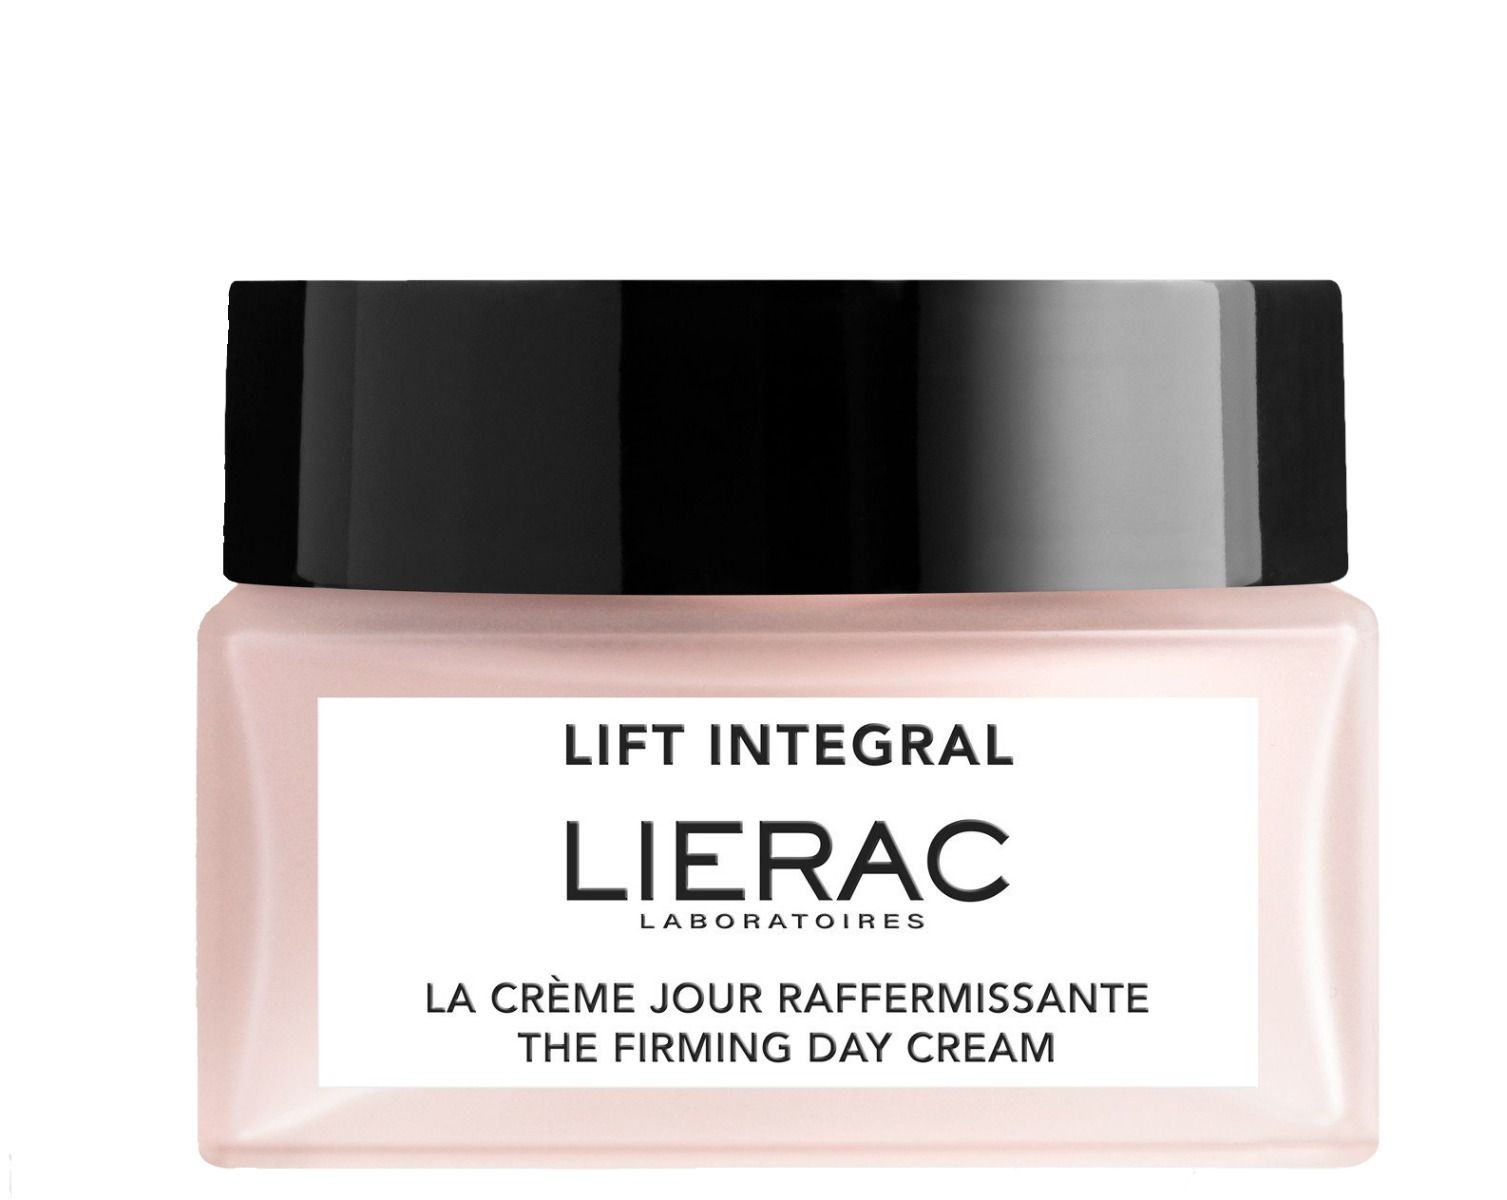 Lierac Lift Integral дневной крем для лица, 50 ml lierac lift integral ремоделирующий гель крем для шеи и зоны декольте 50мл